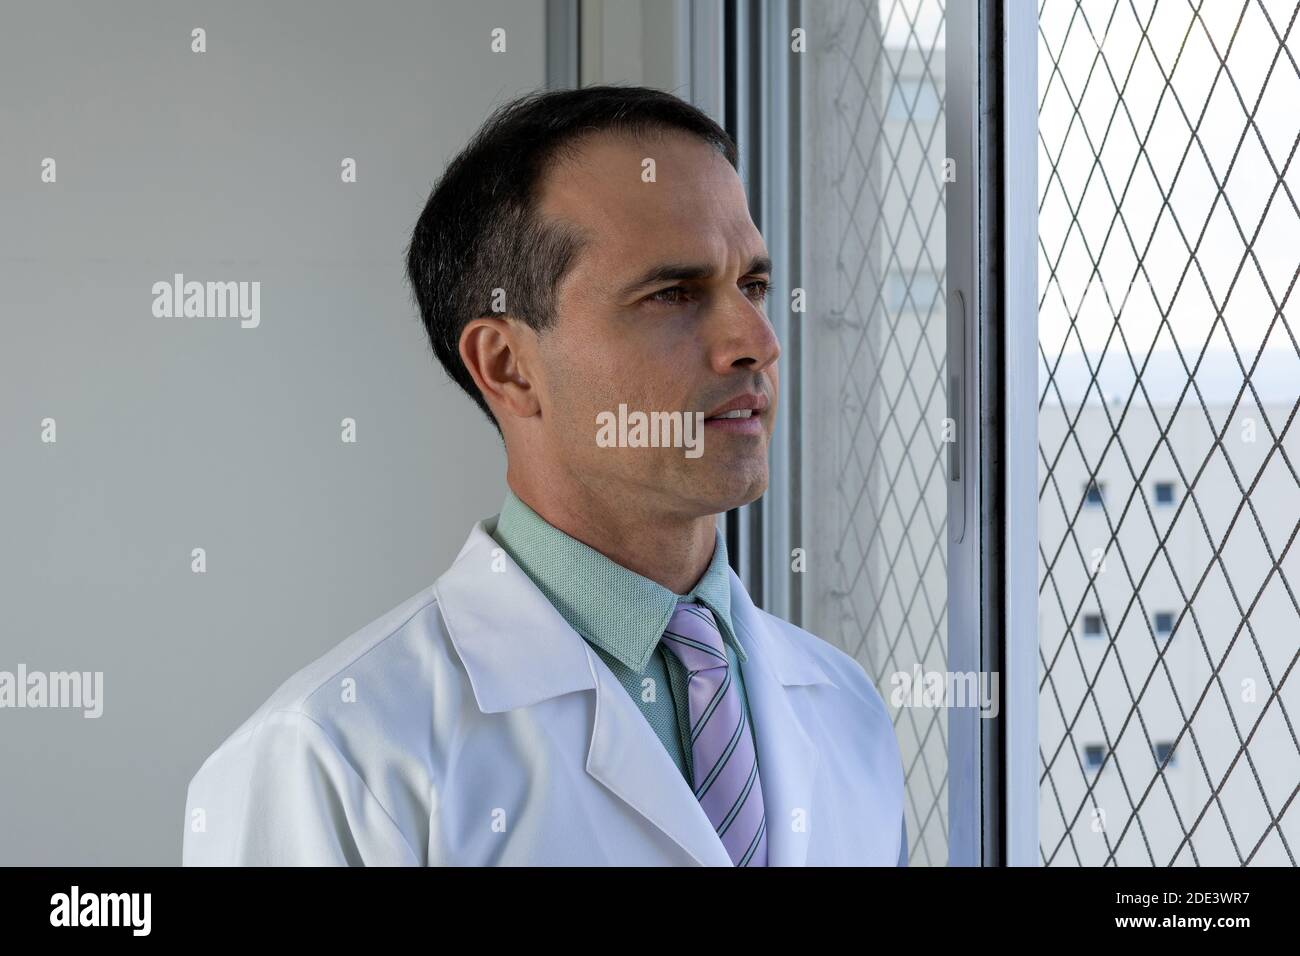 44 Jahre alter Arzt mit weißem Mantel und Krawatte, der auf das Fenster schaut. Stockfoto